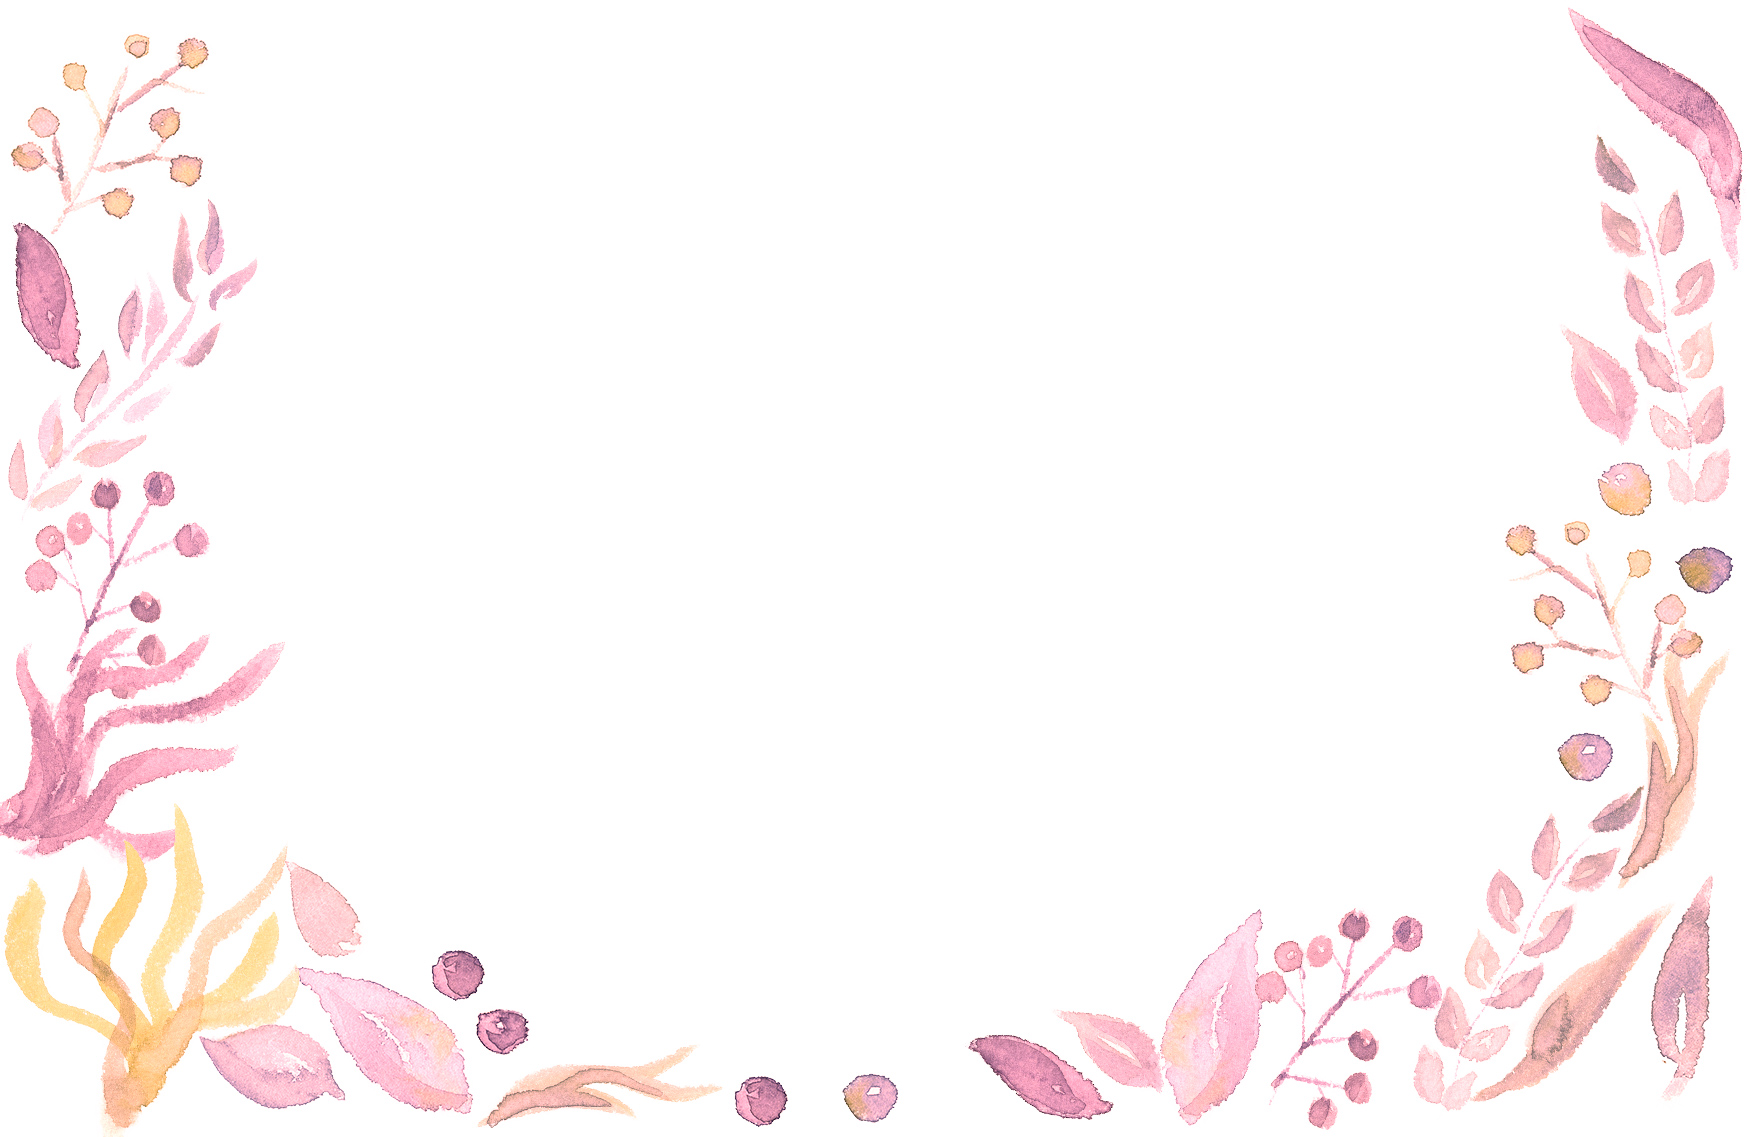 手書きイラスト無料 水彩 葉っぱ 背景 ピンク色 公式 イラストダウンロード